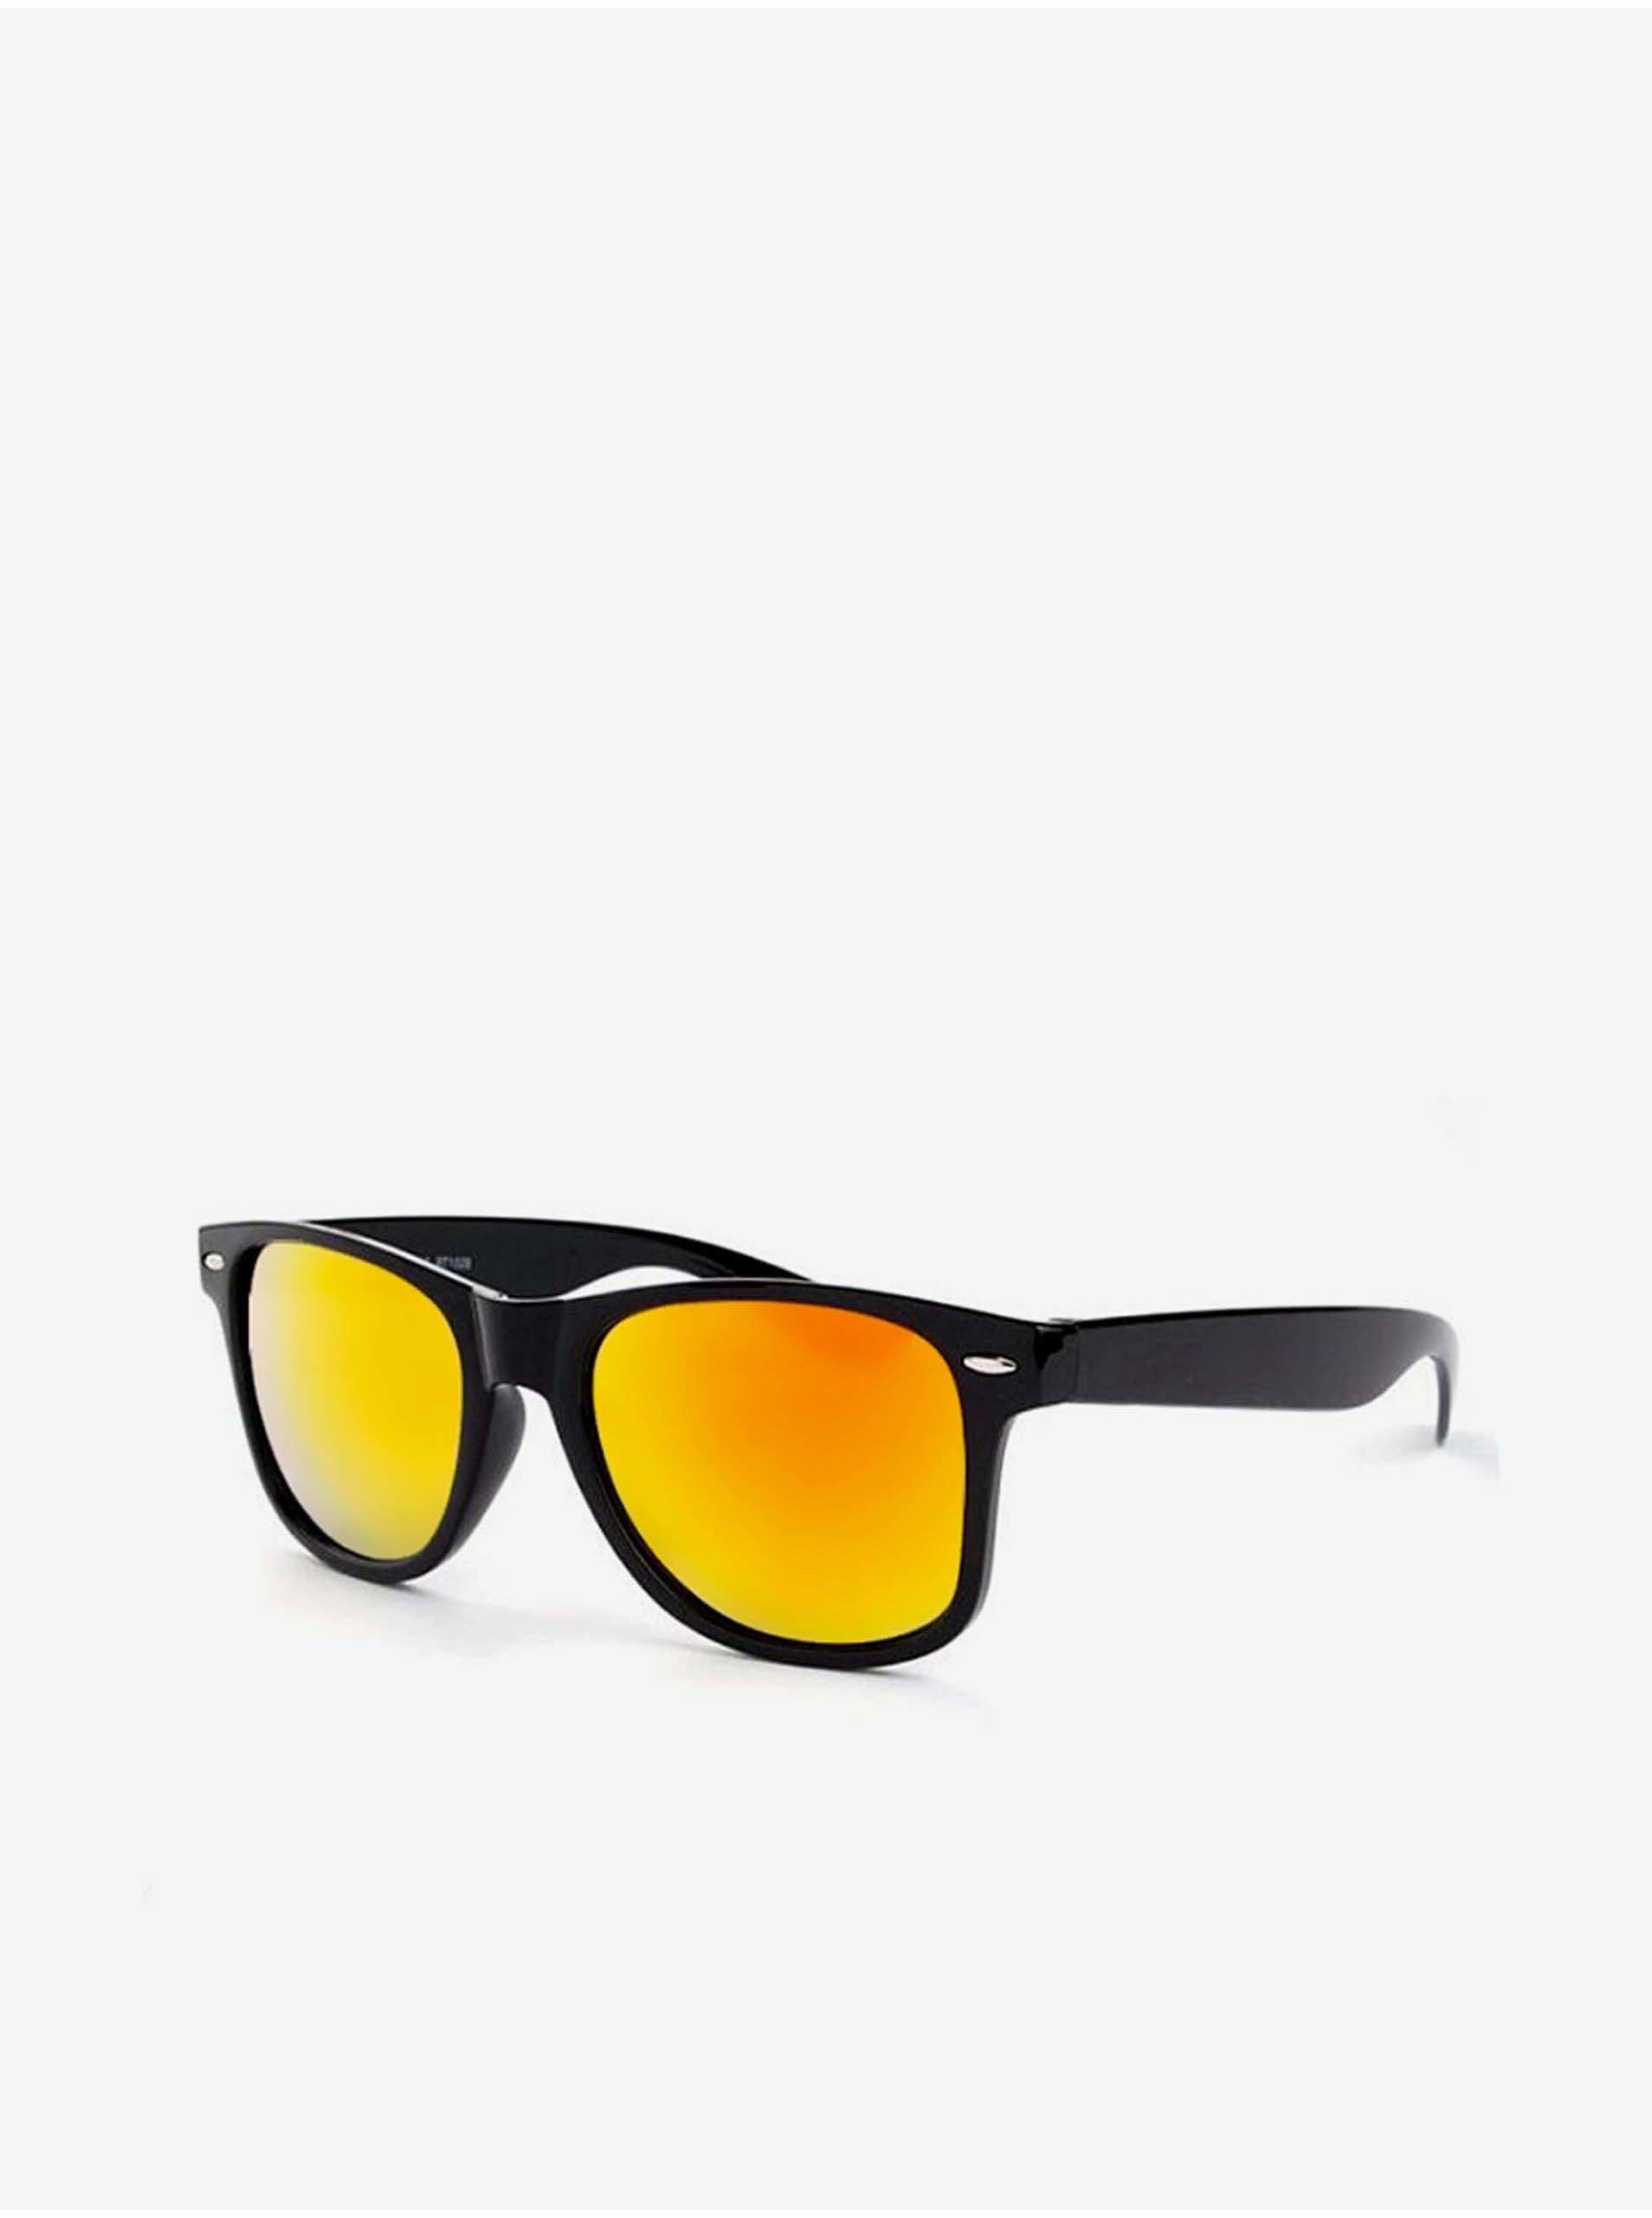 E-shop VeyRey Sluneční brýle Polarizační Nerd černé s červenými skly